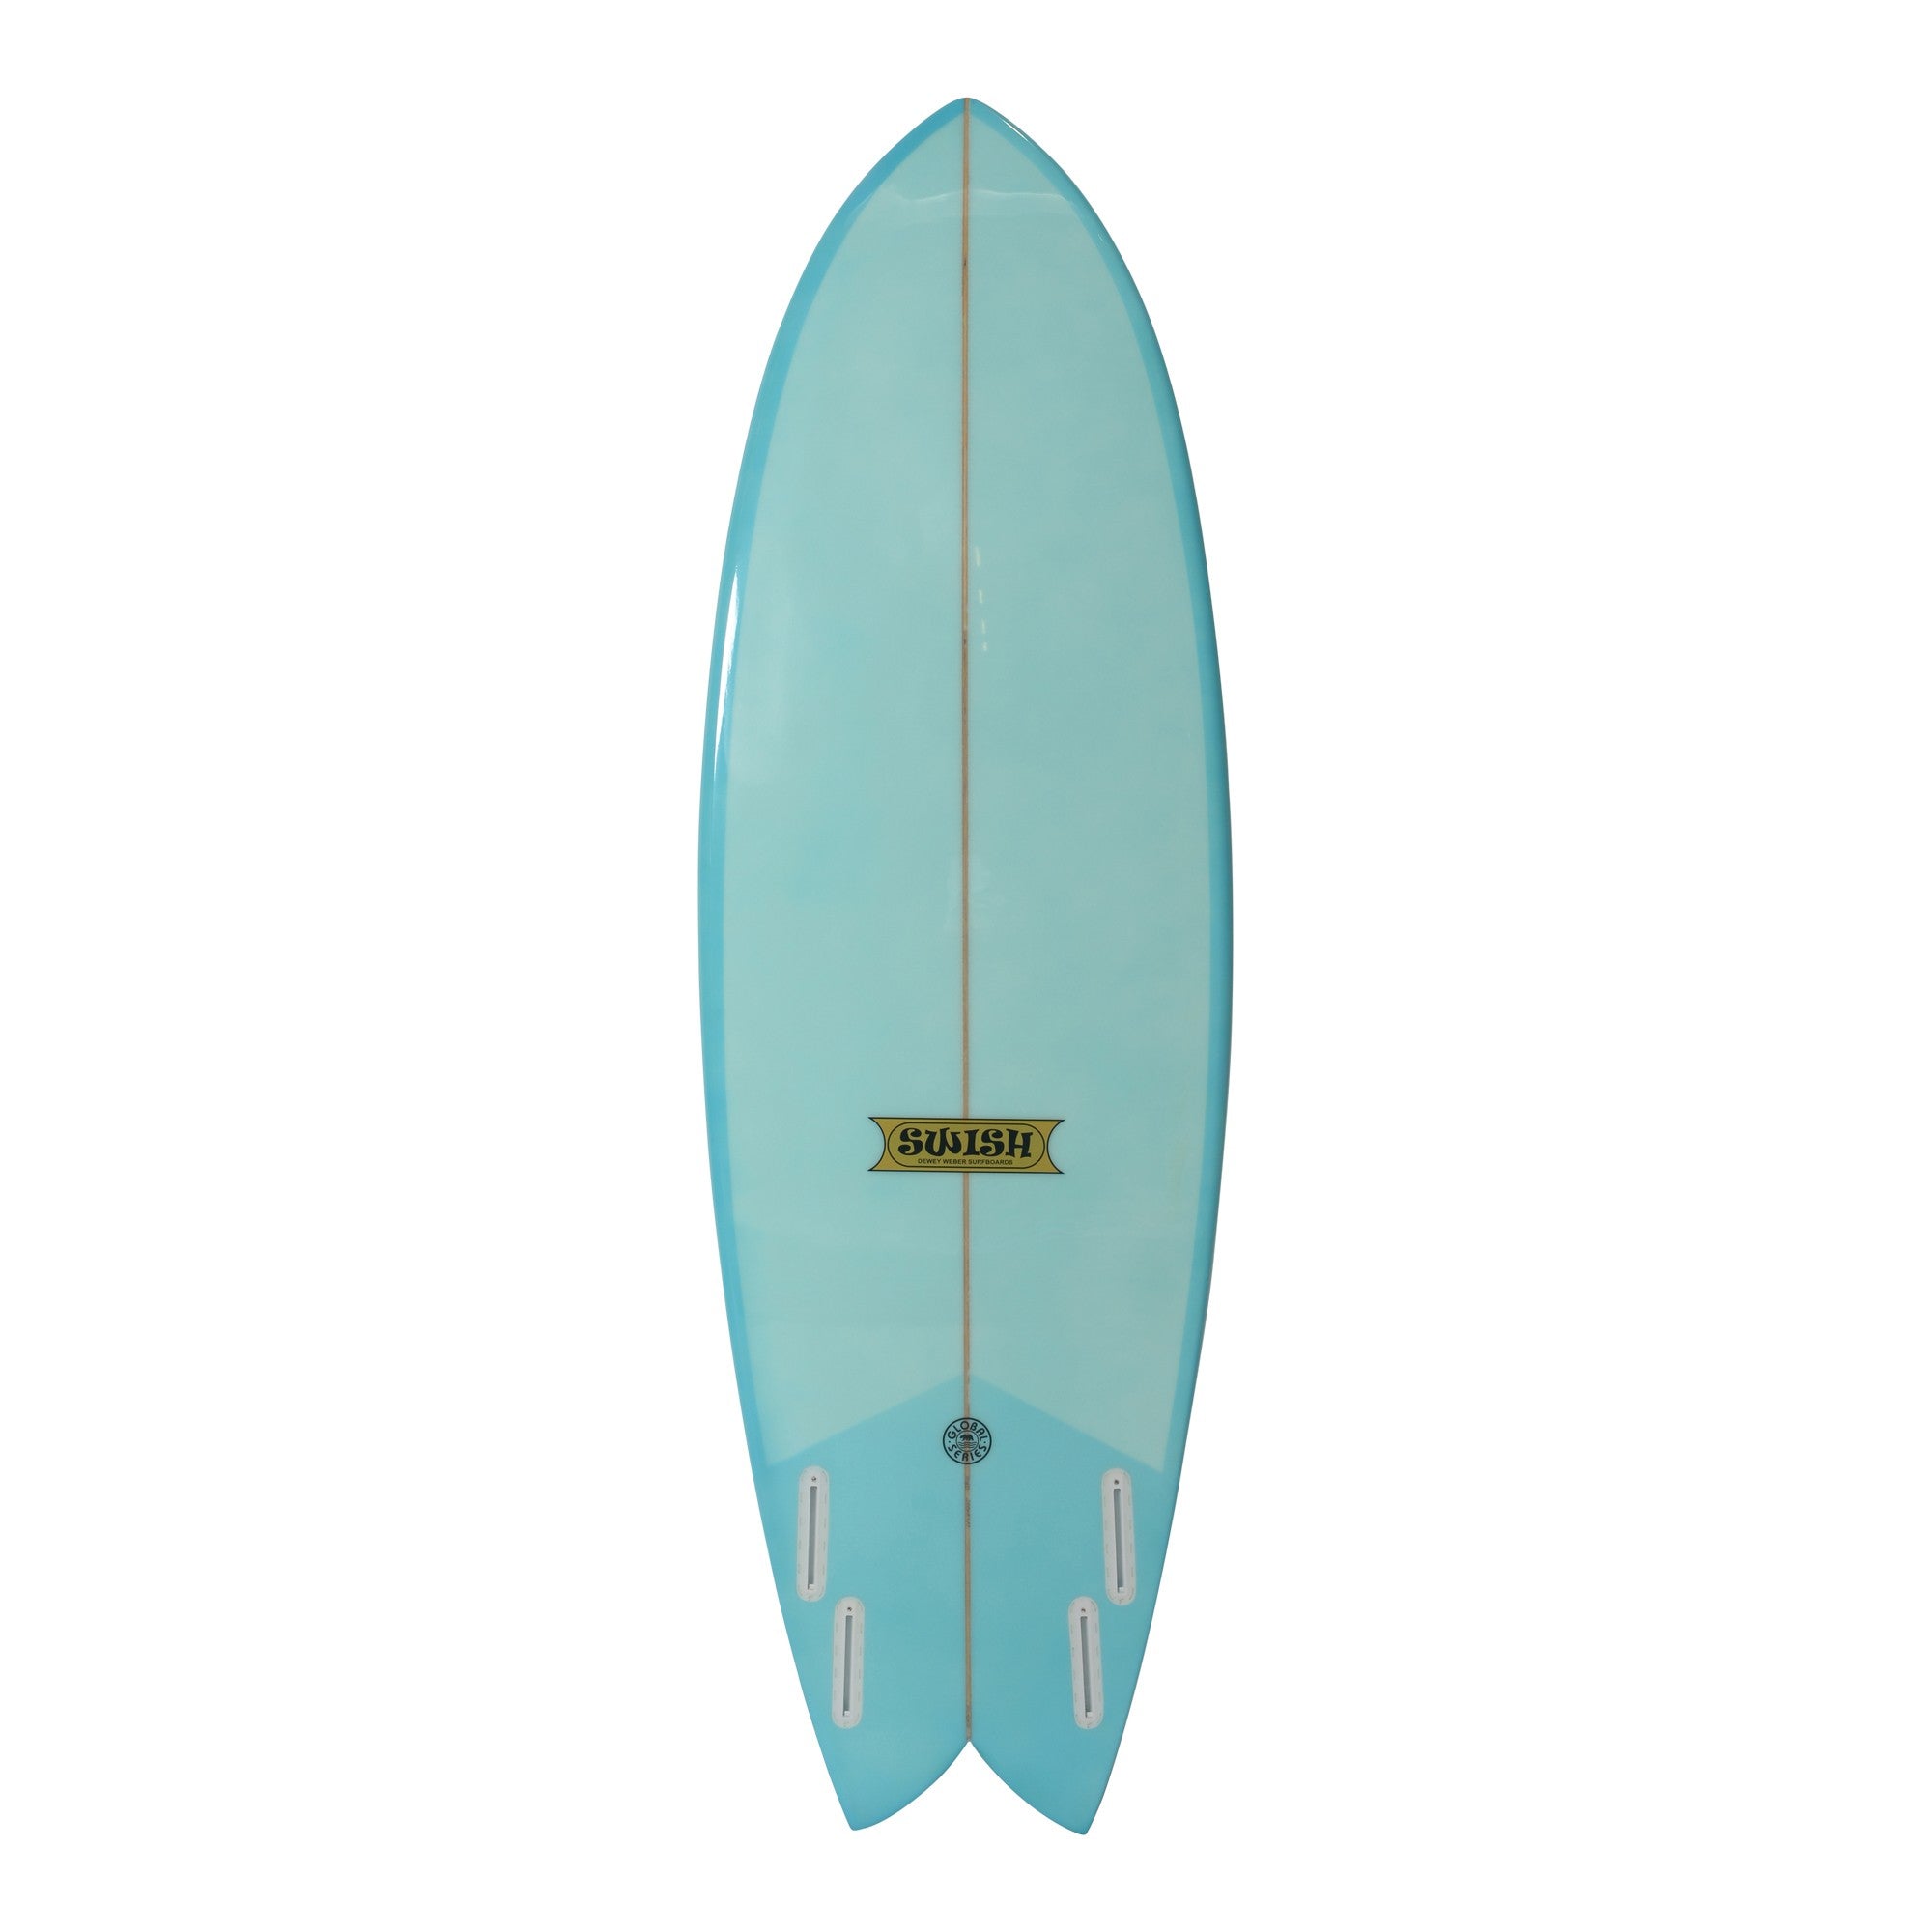 WEBER SURFBOARDS - Swish 6'0 - Blue